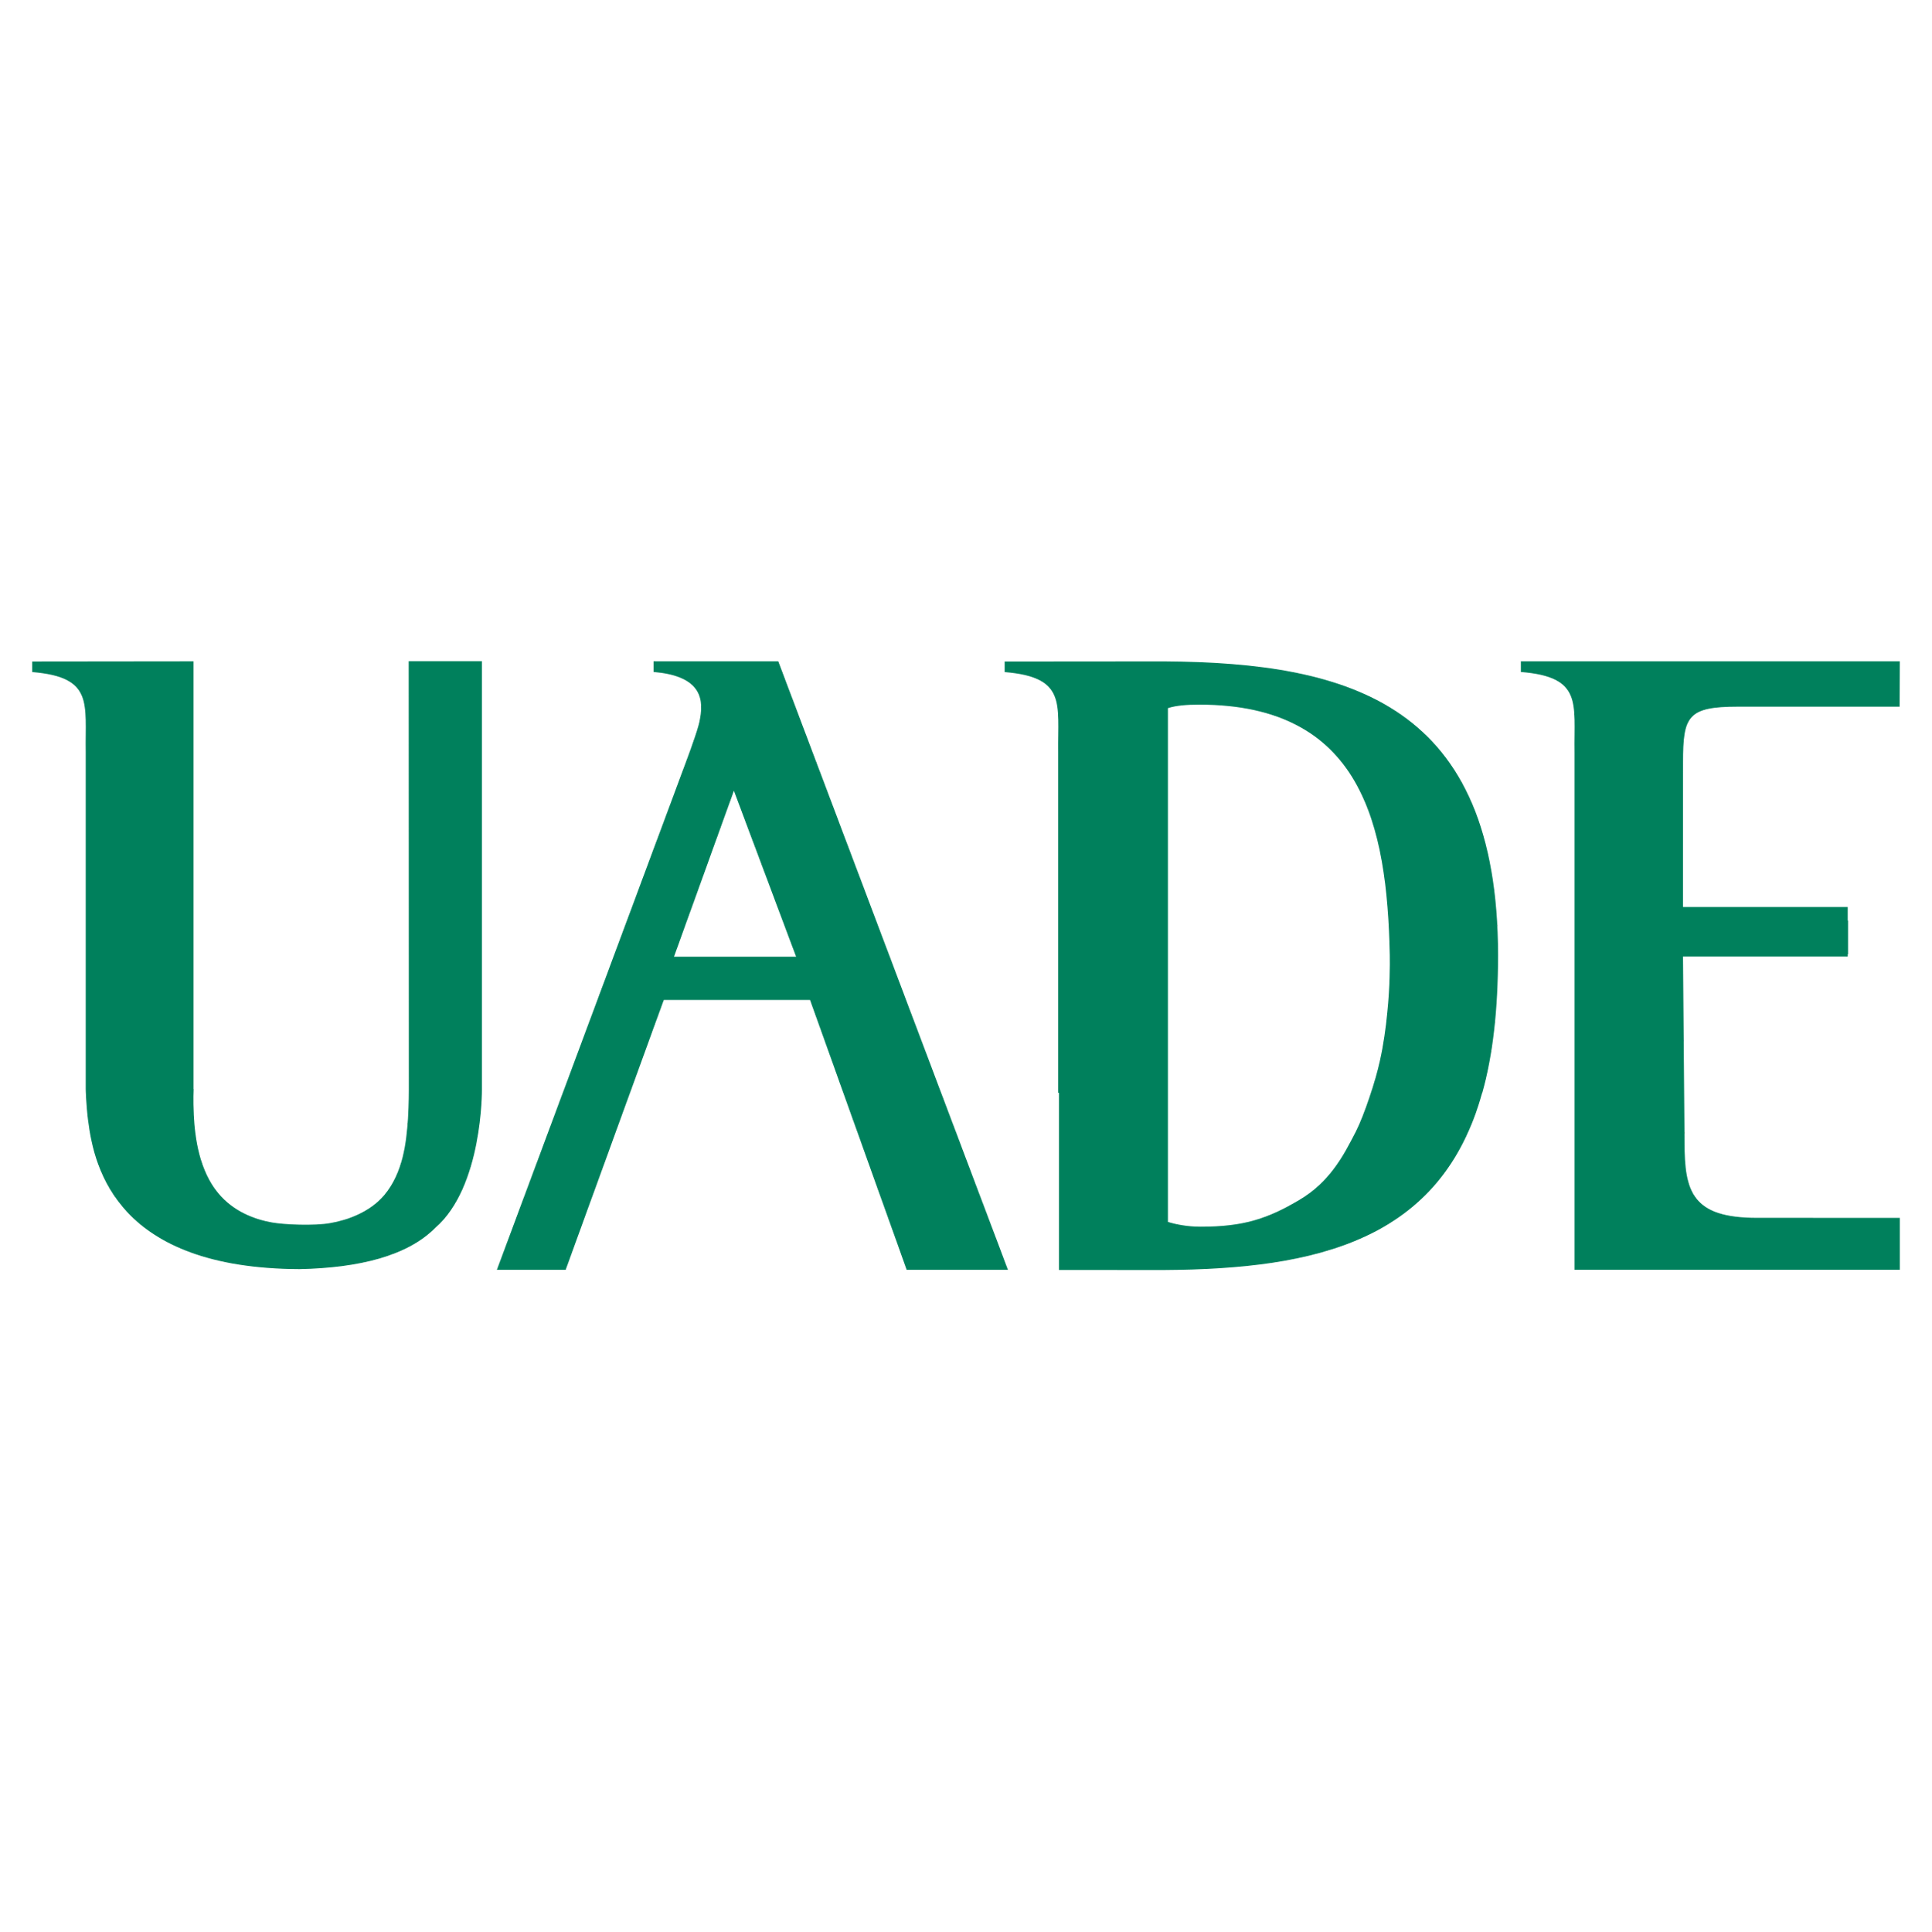 Looo Uade Logo Transparent Picture